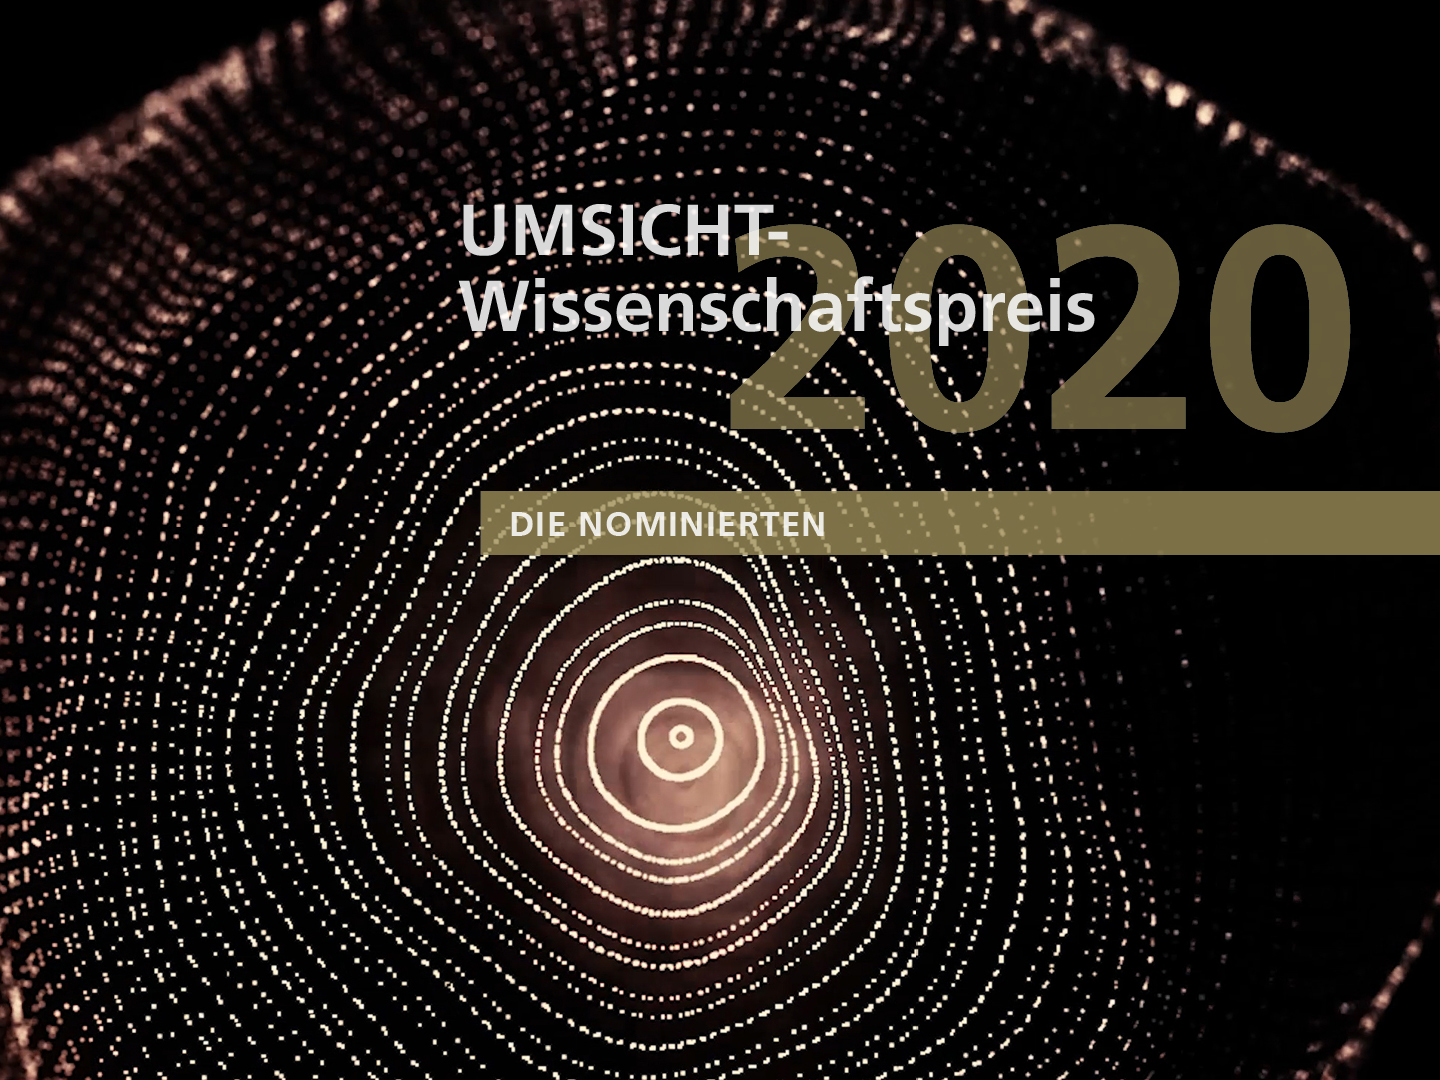 UMSICHT-Wissenschaftspreis 2020.